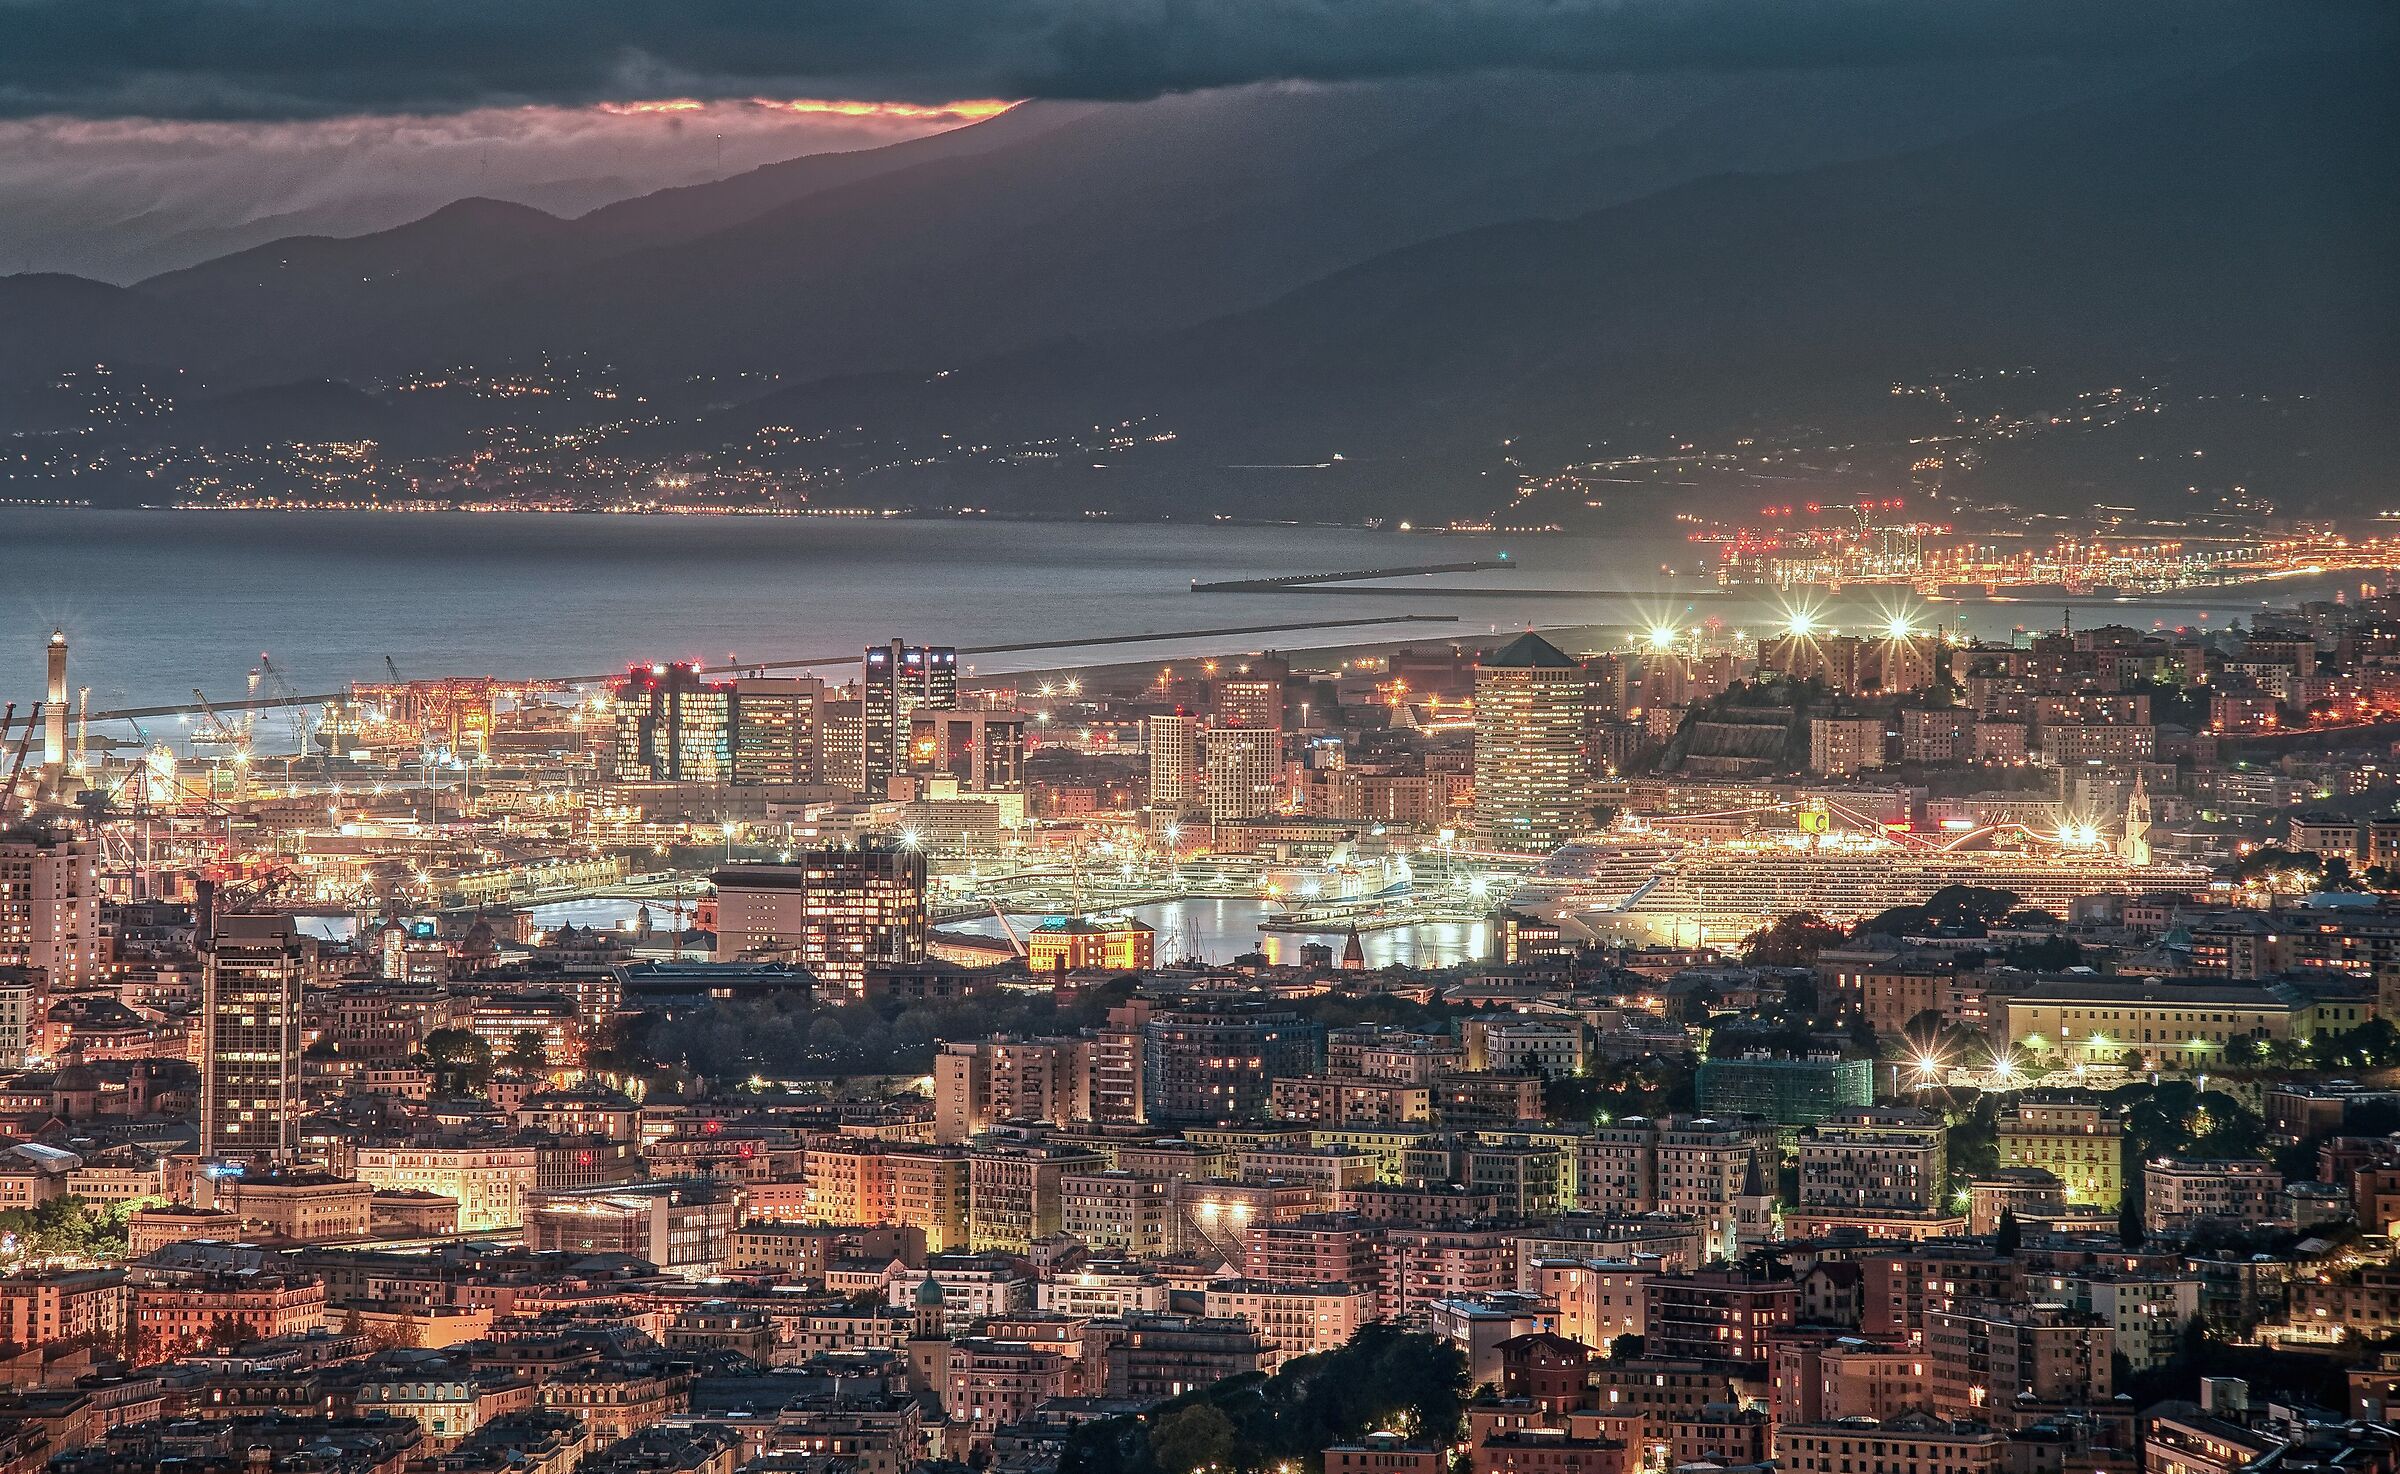 Una sera di novembre,guardando Genova dall'alto.......